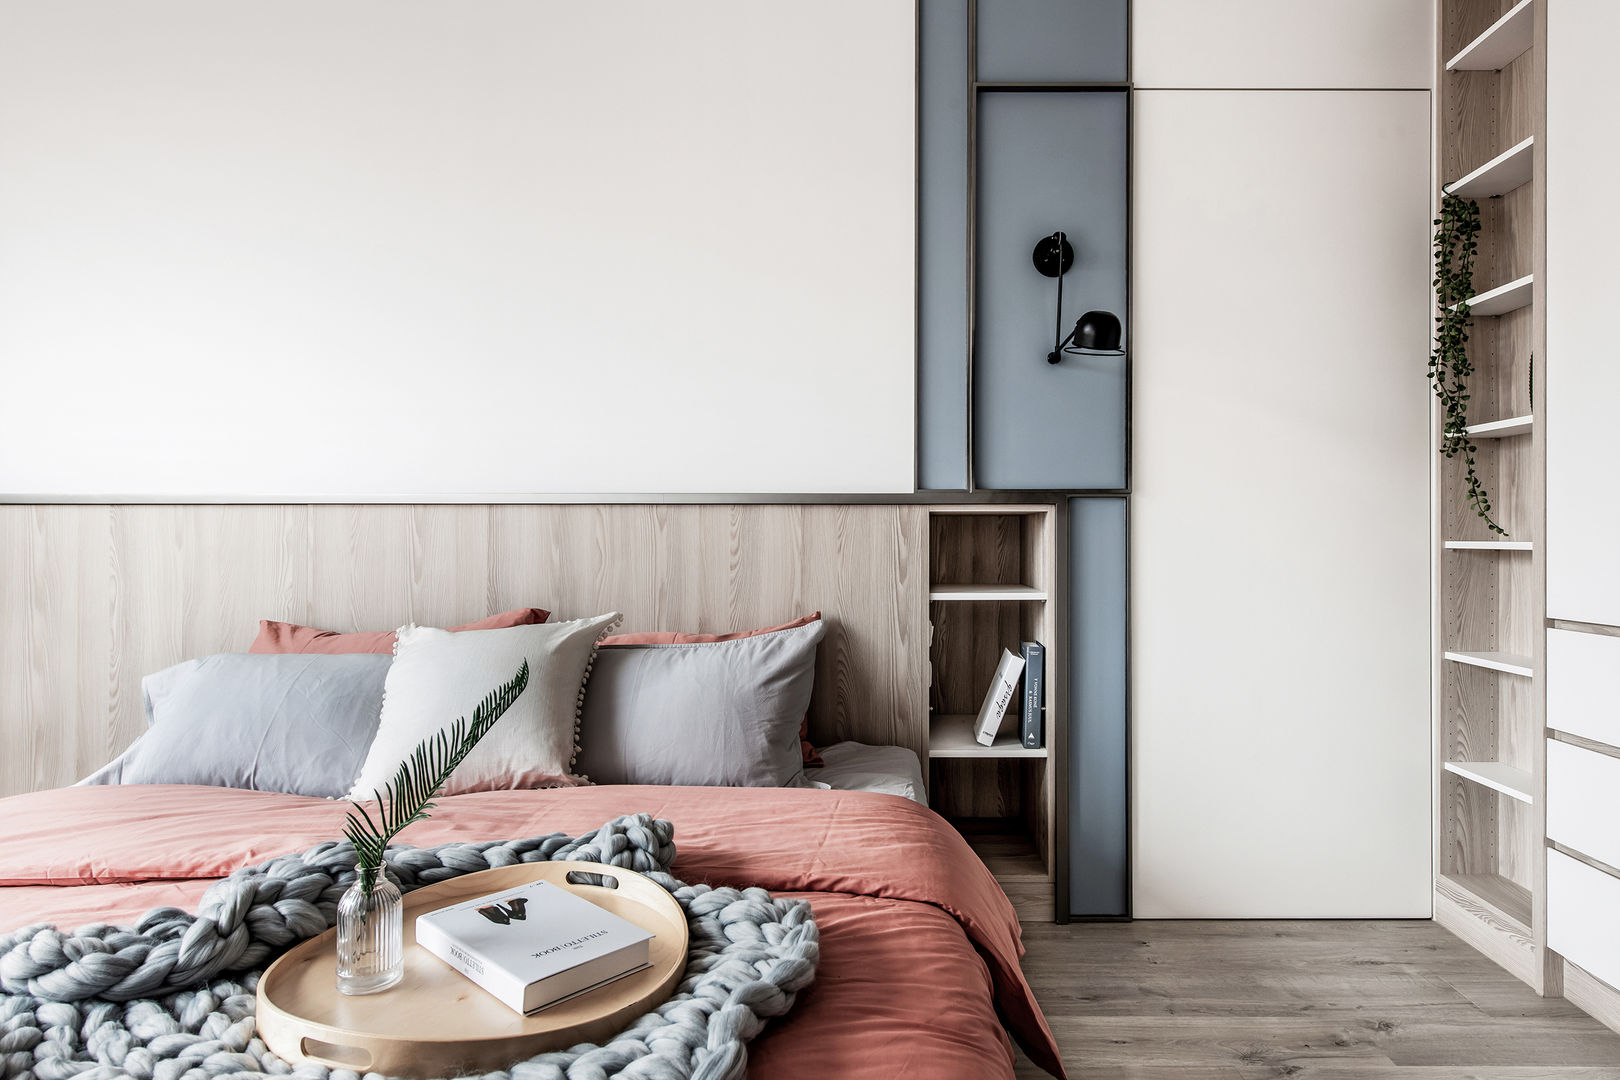 中古翻新生活宅 臥室床頭隱藏門 達譽設計 Scandinavian style bedroom